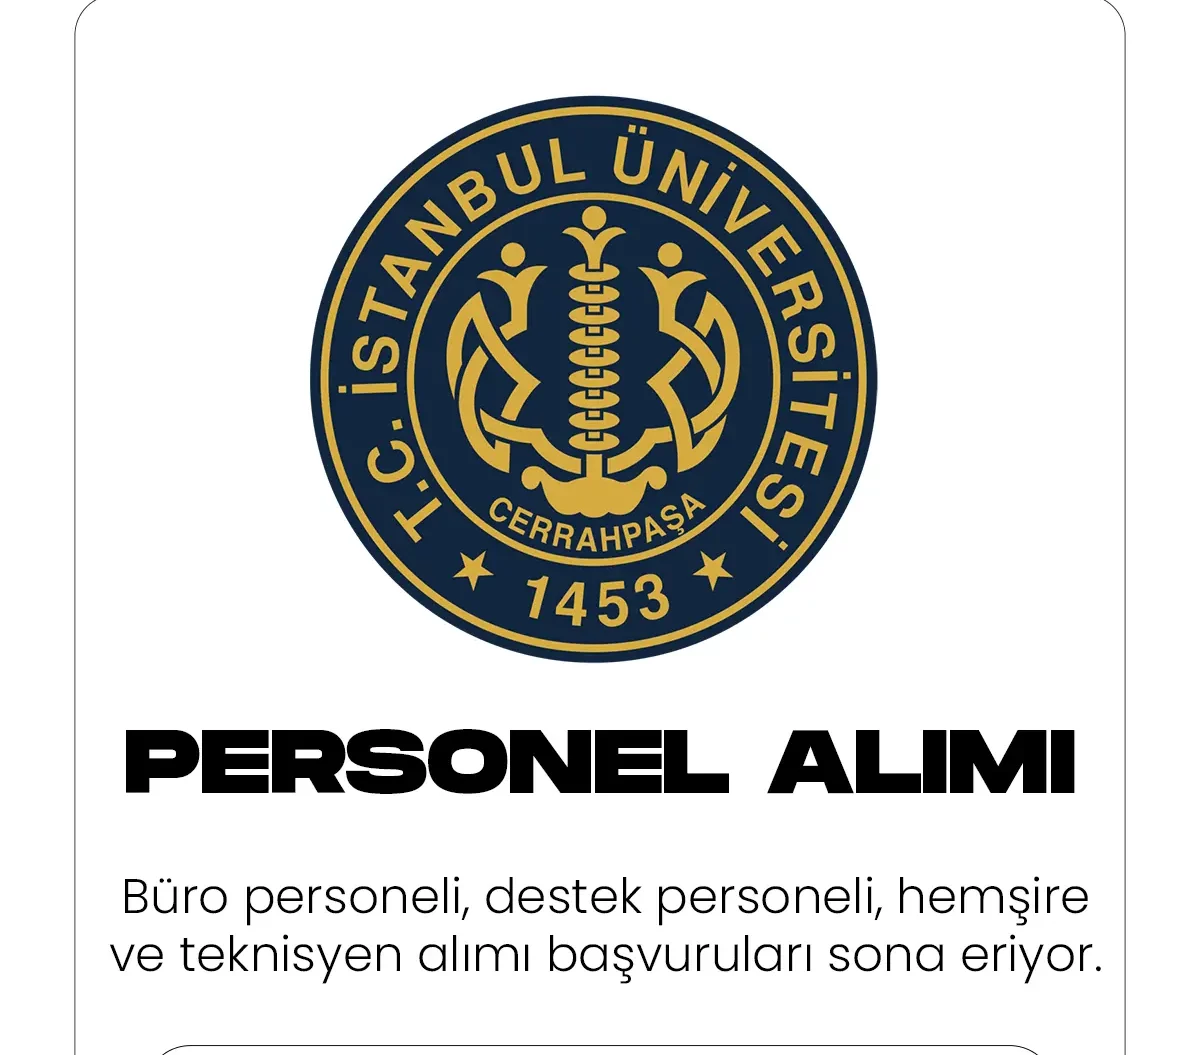 İstanbul Üniversitesi Cerrahpaşa tarafından yayımlanan sözleşmeli personel alımı ilanına başvuruular sona eriyor.